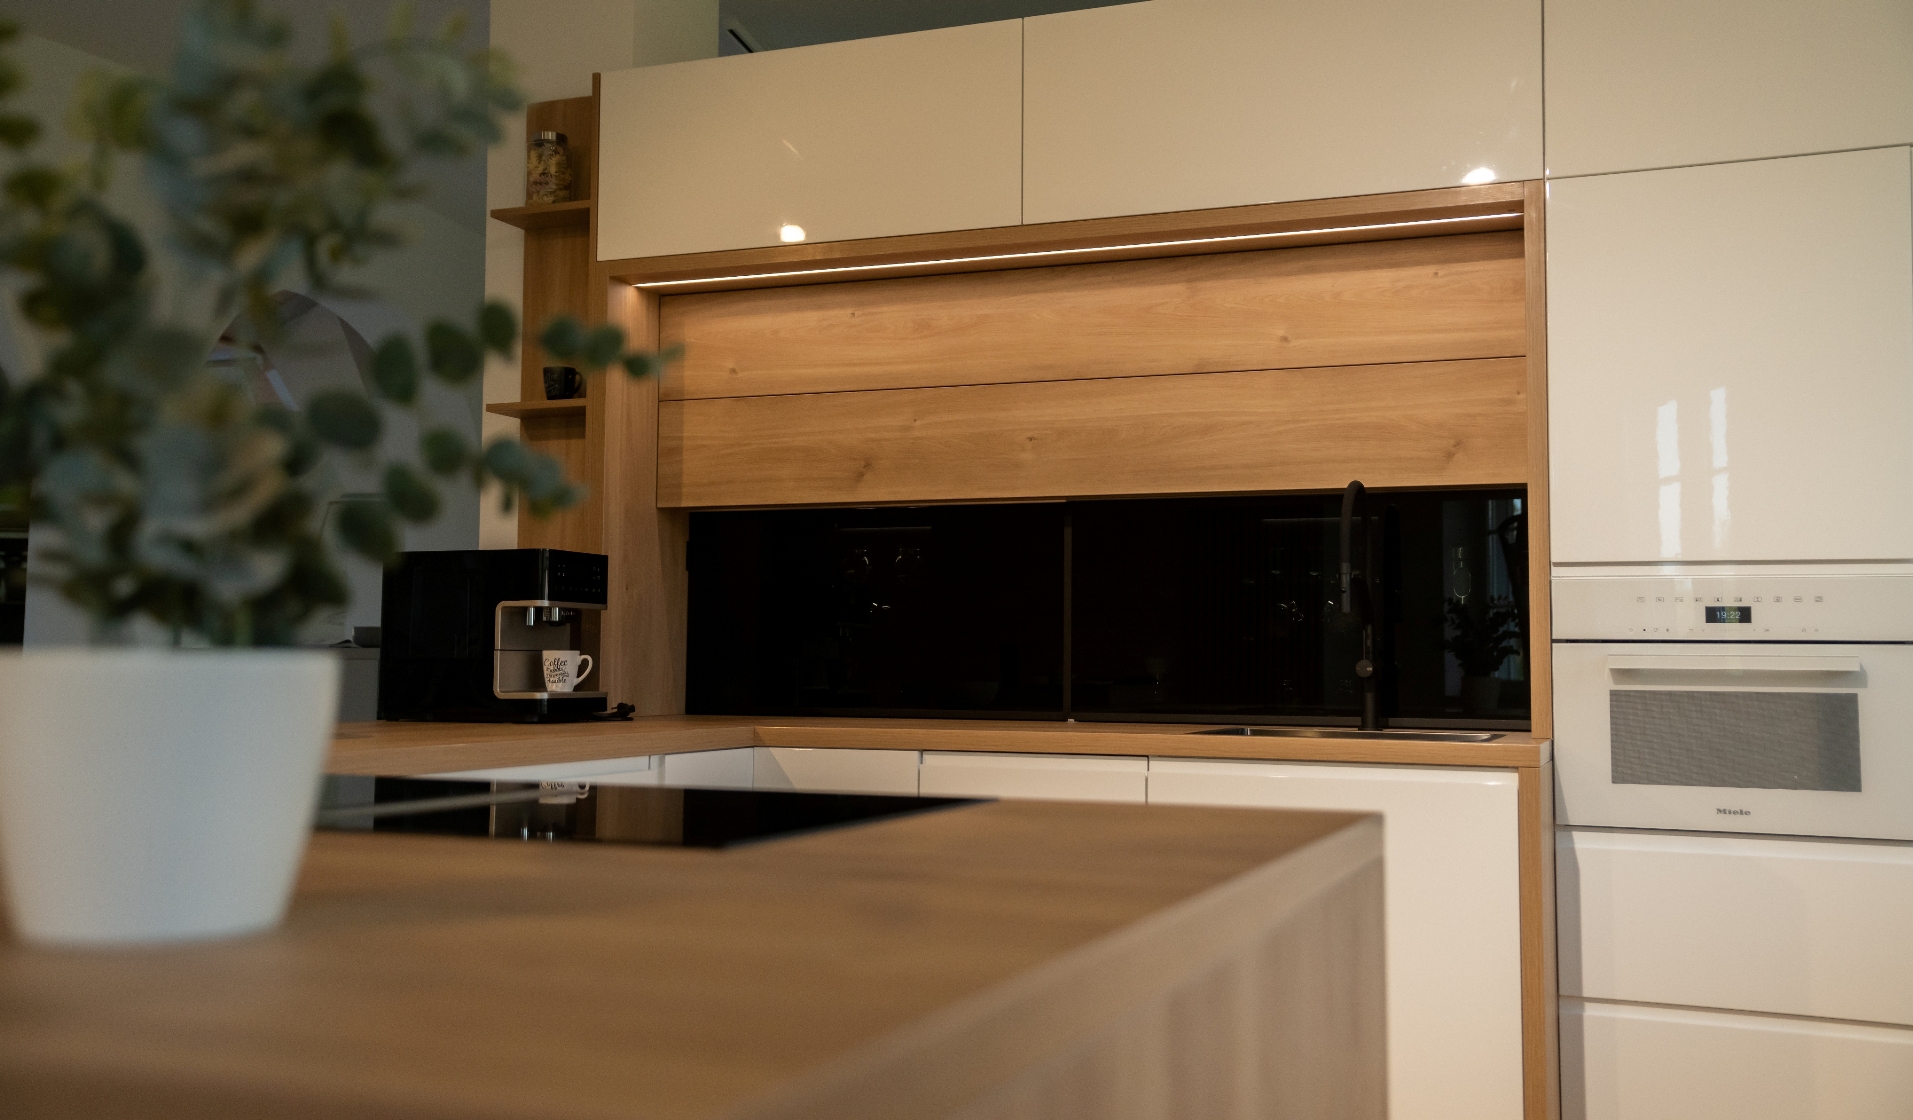 "U" alakú, magasfényű festett, fogantyú profilos, modern konyha